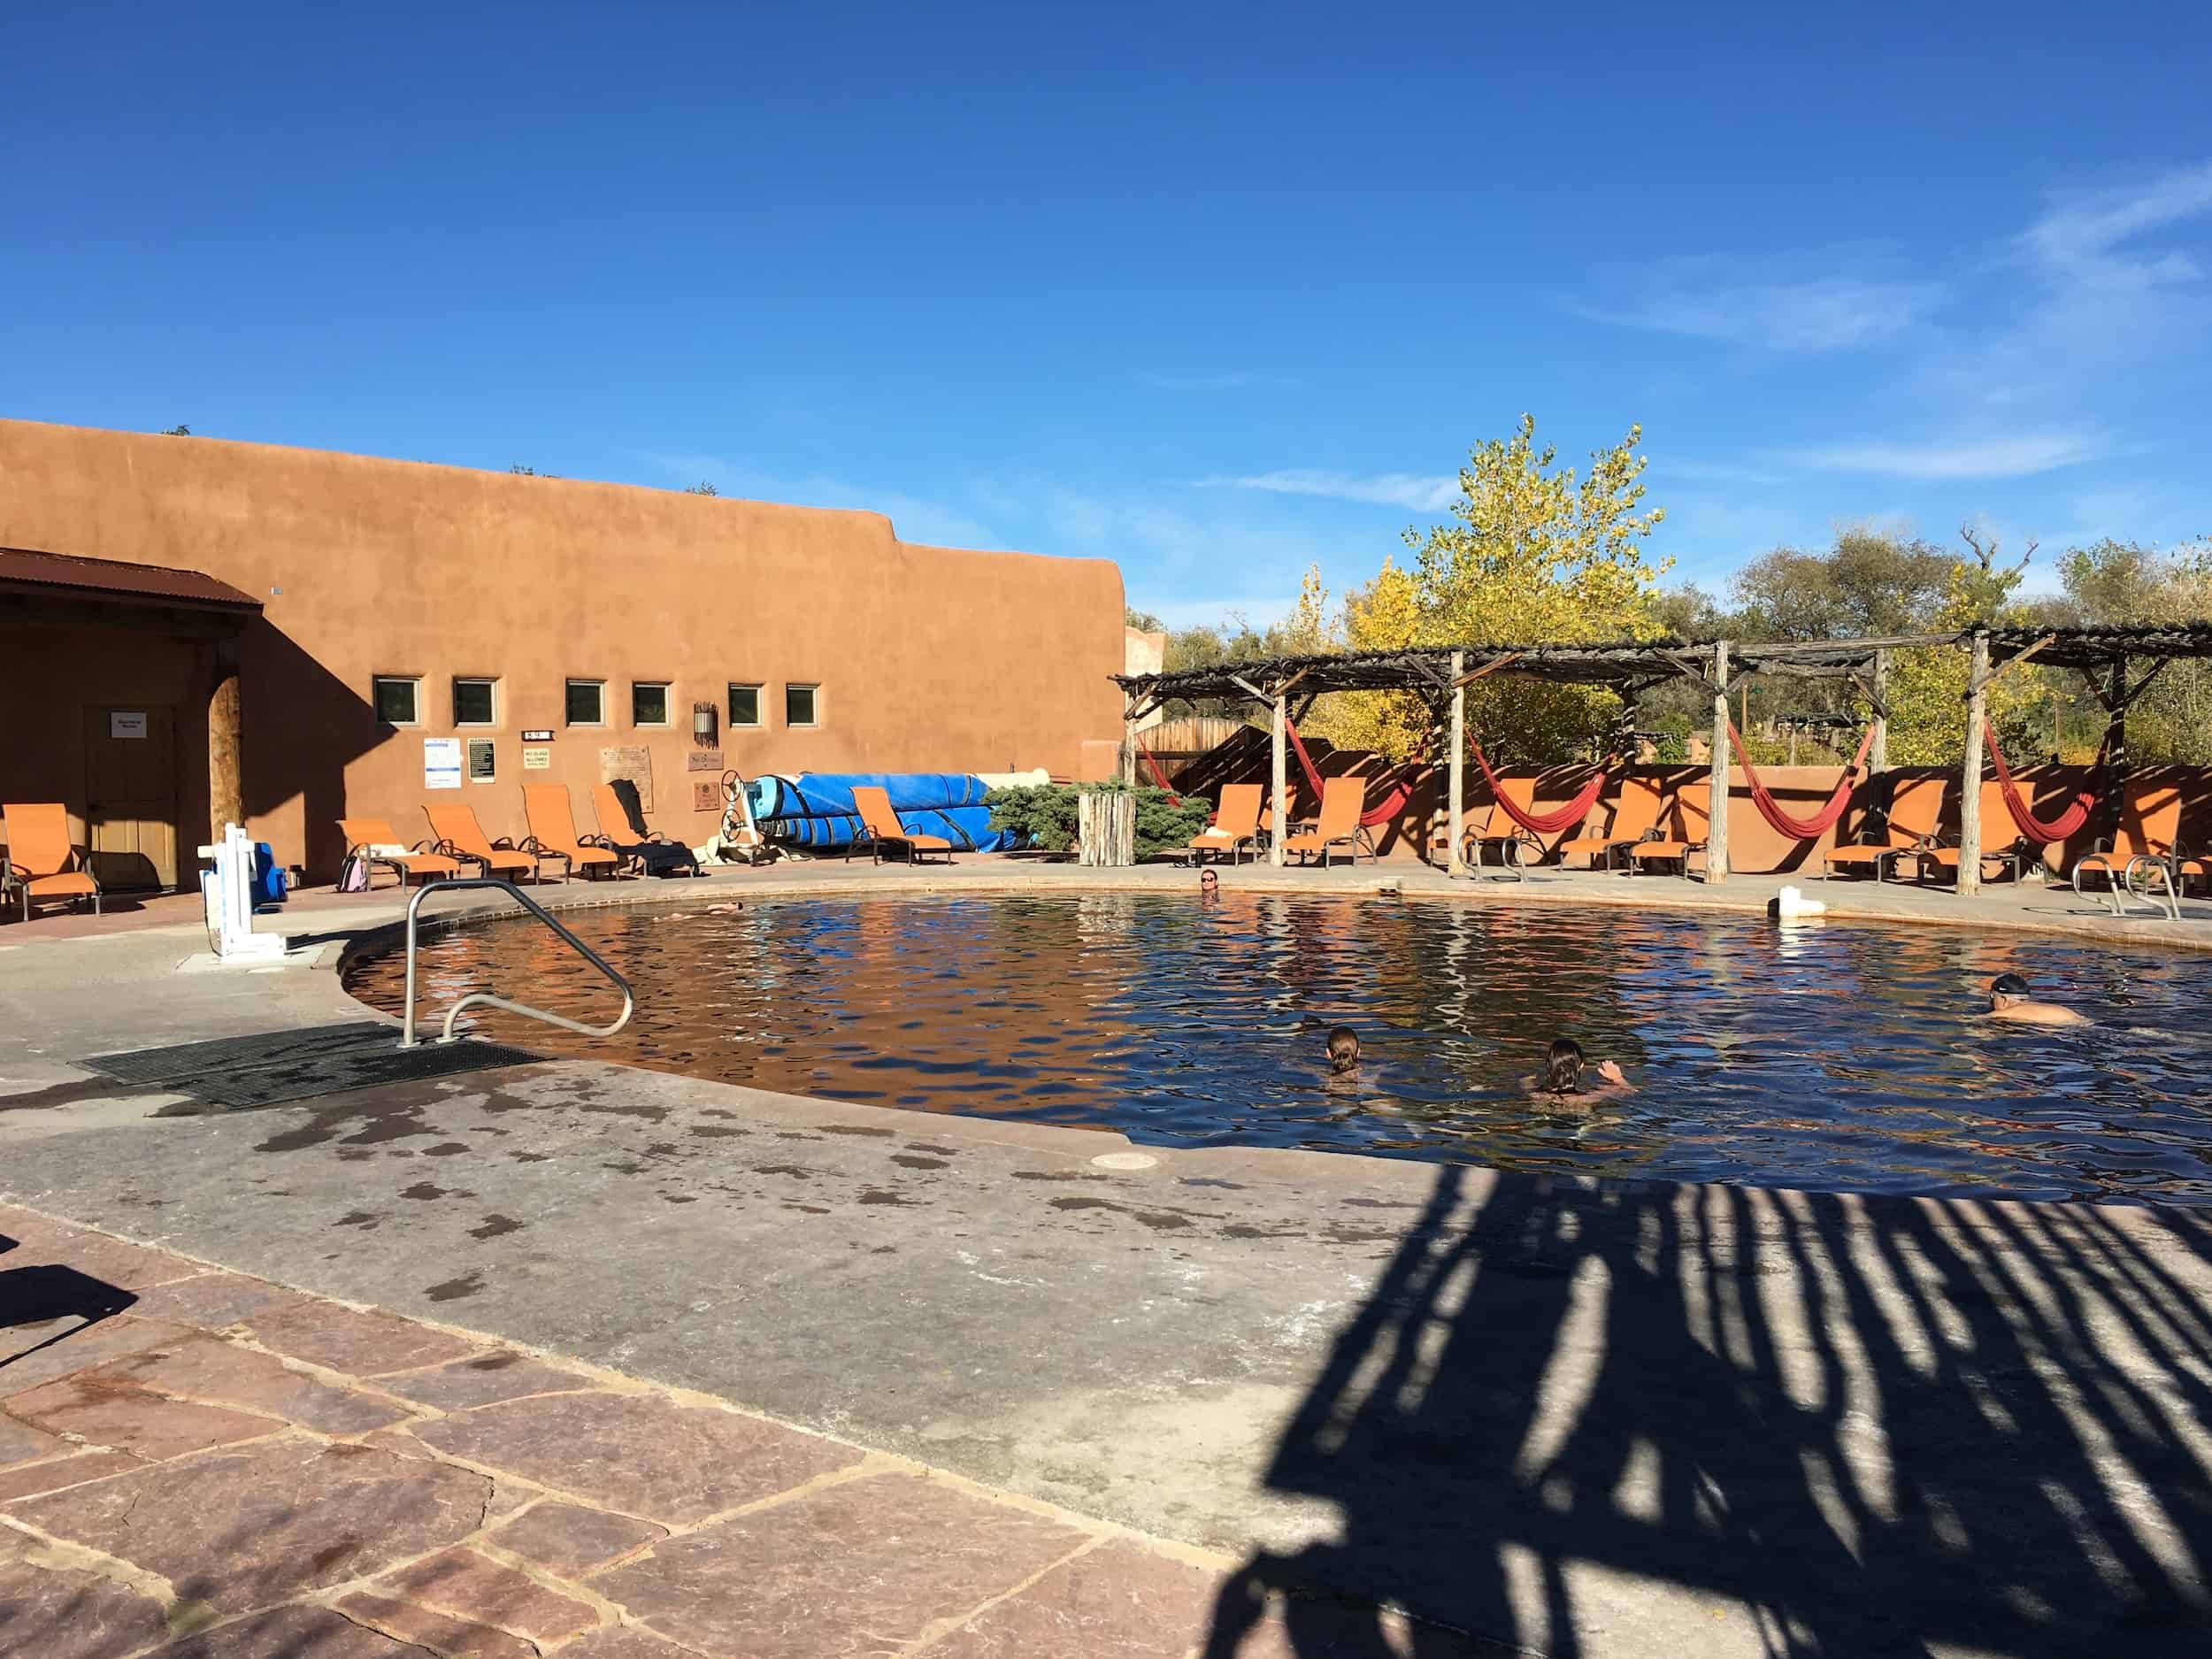 Yoga - Ojo Spa Resorts - Ojo Caliente, Taos; Ojo Santa Fe, New Mexico